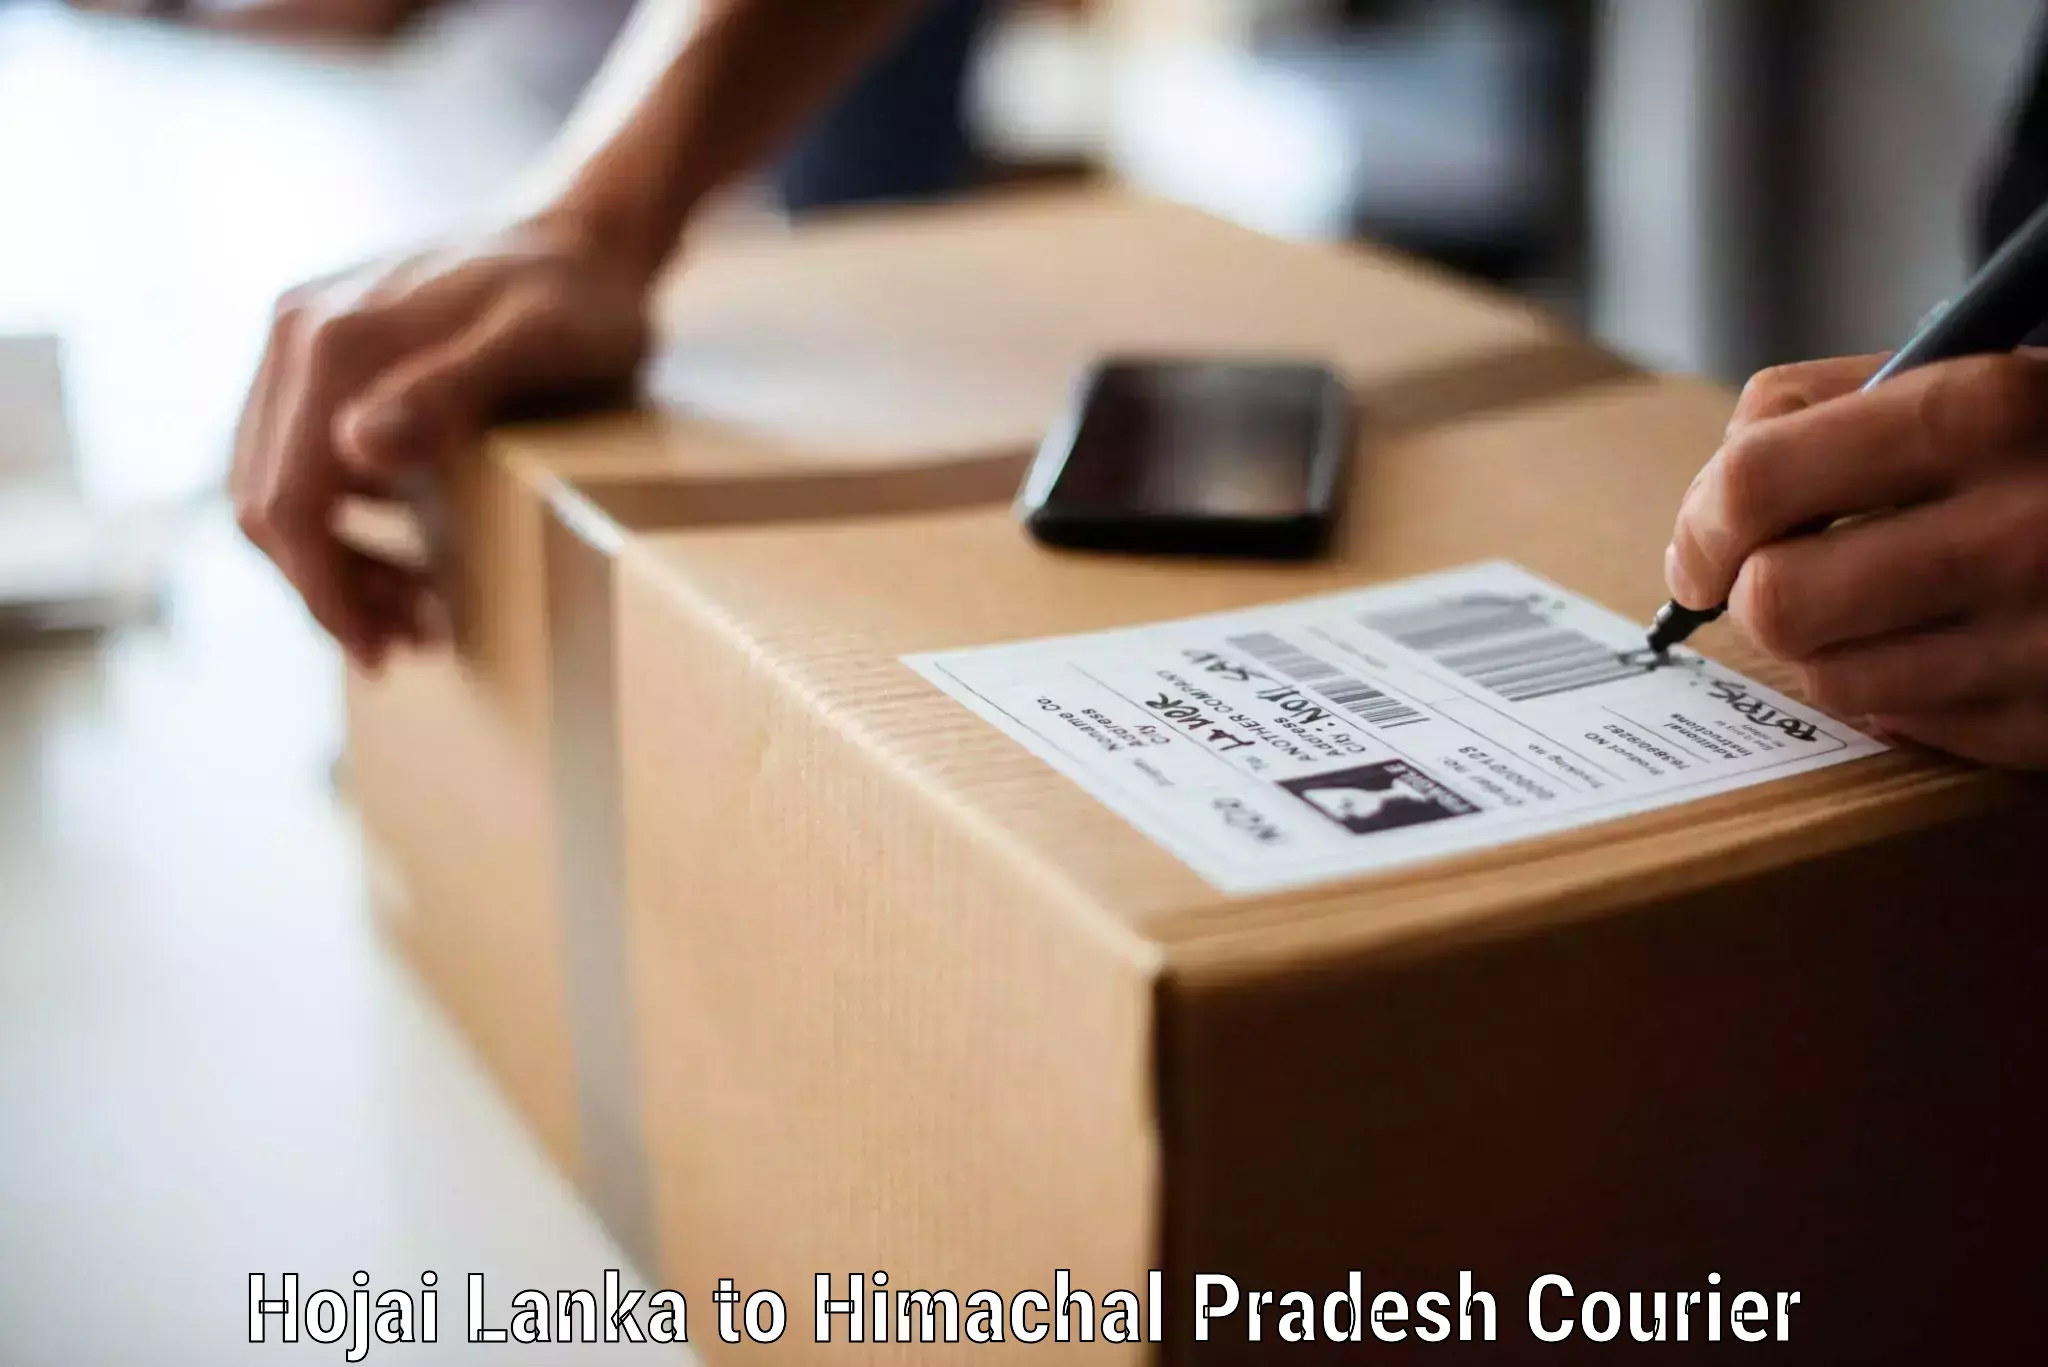 Furniture logistics in Hojai Lanka to Khundian